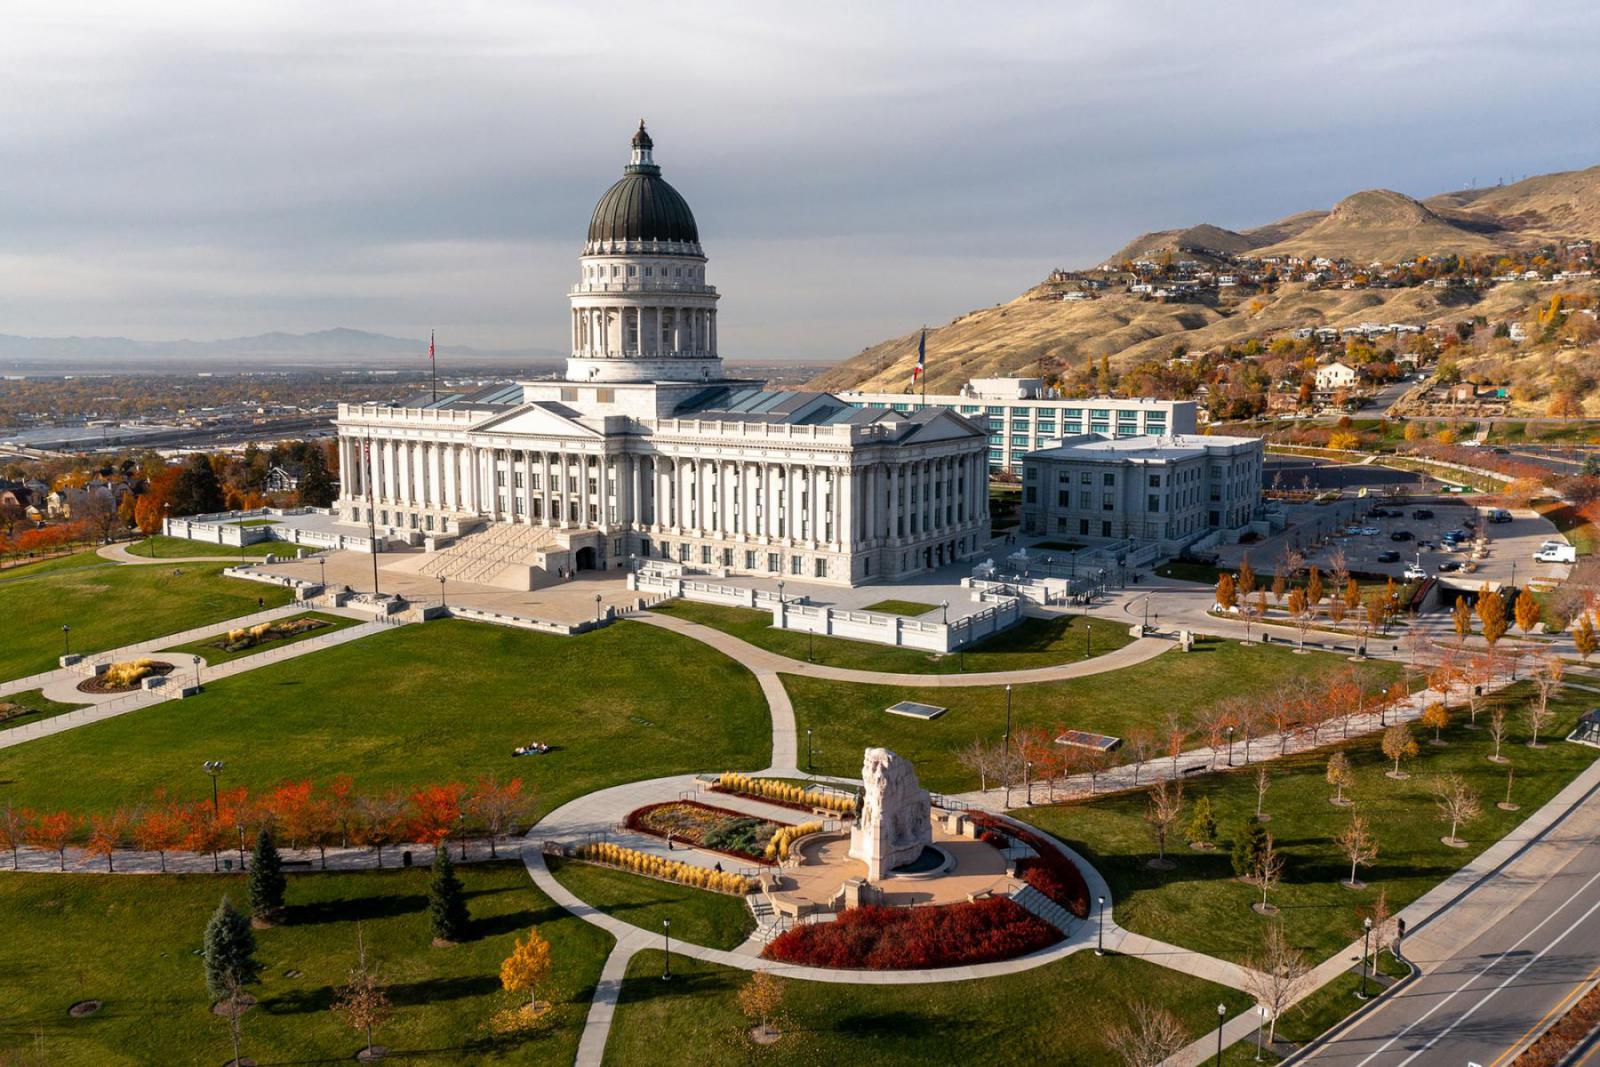 De Utah State Capitol is een populaire plek om foto's te maken in Salt Lake City